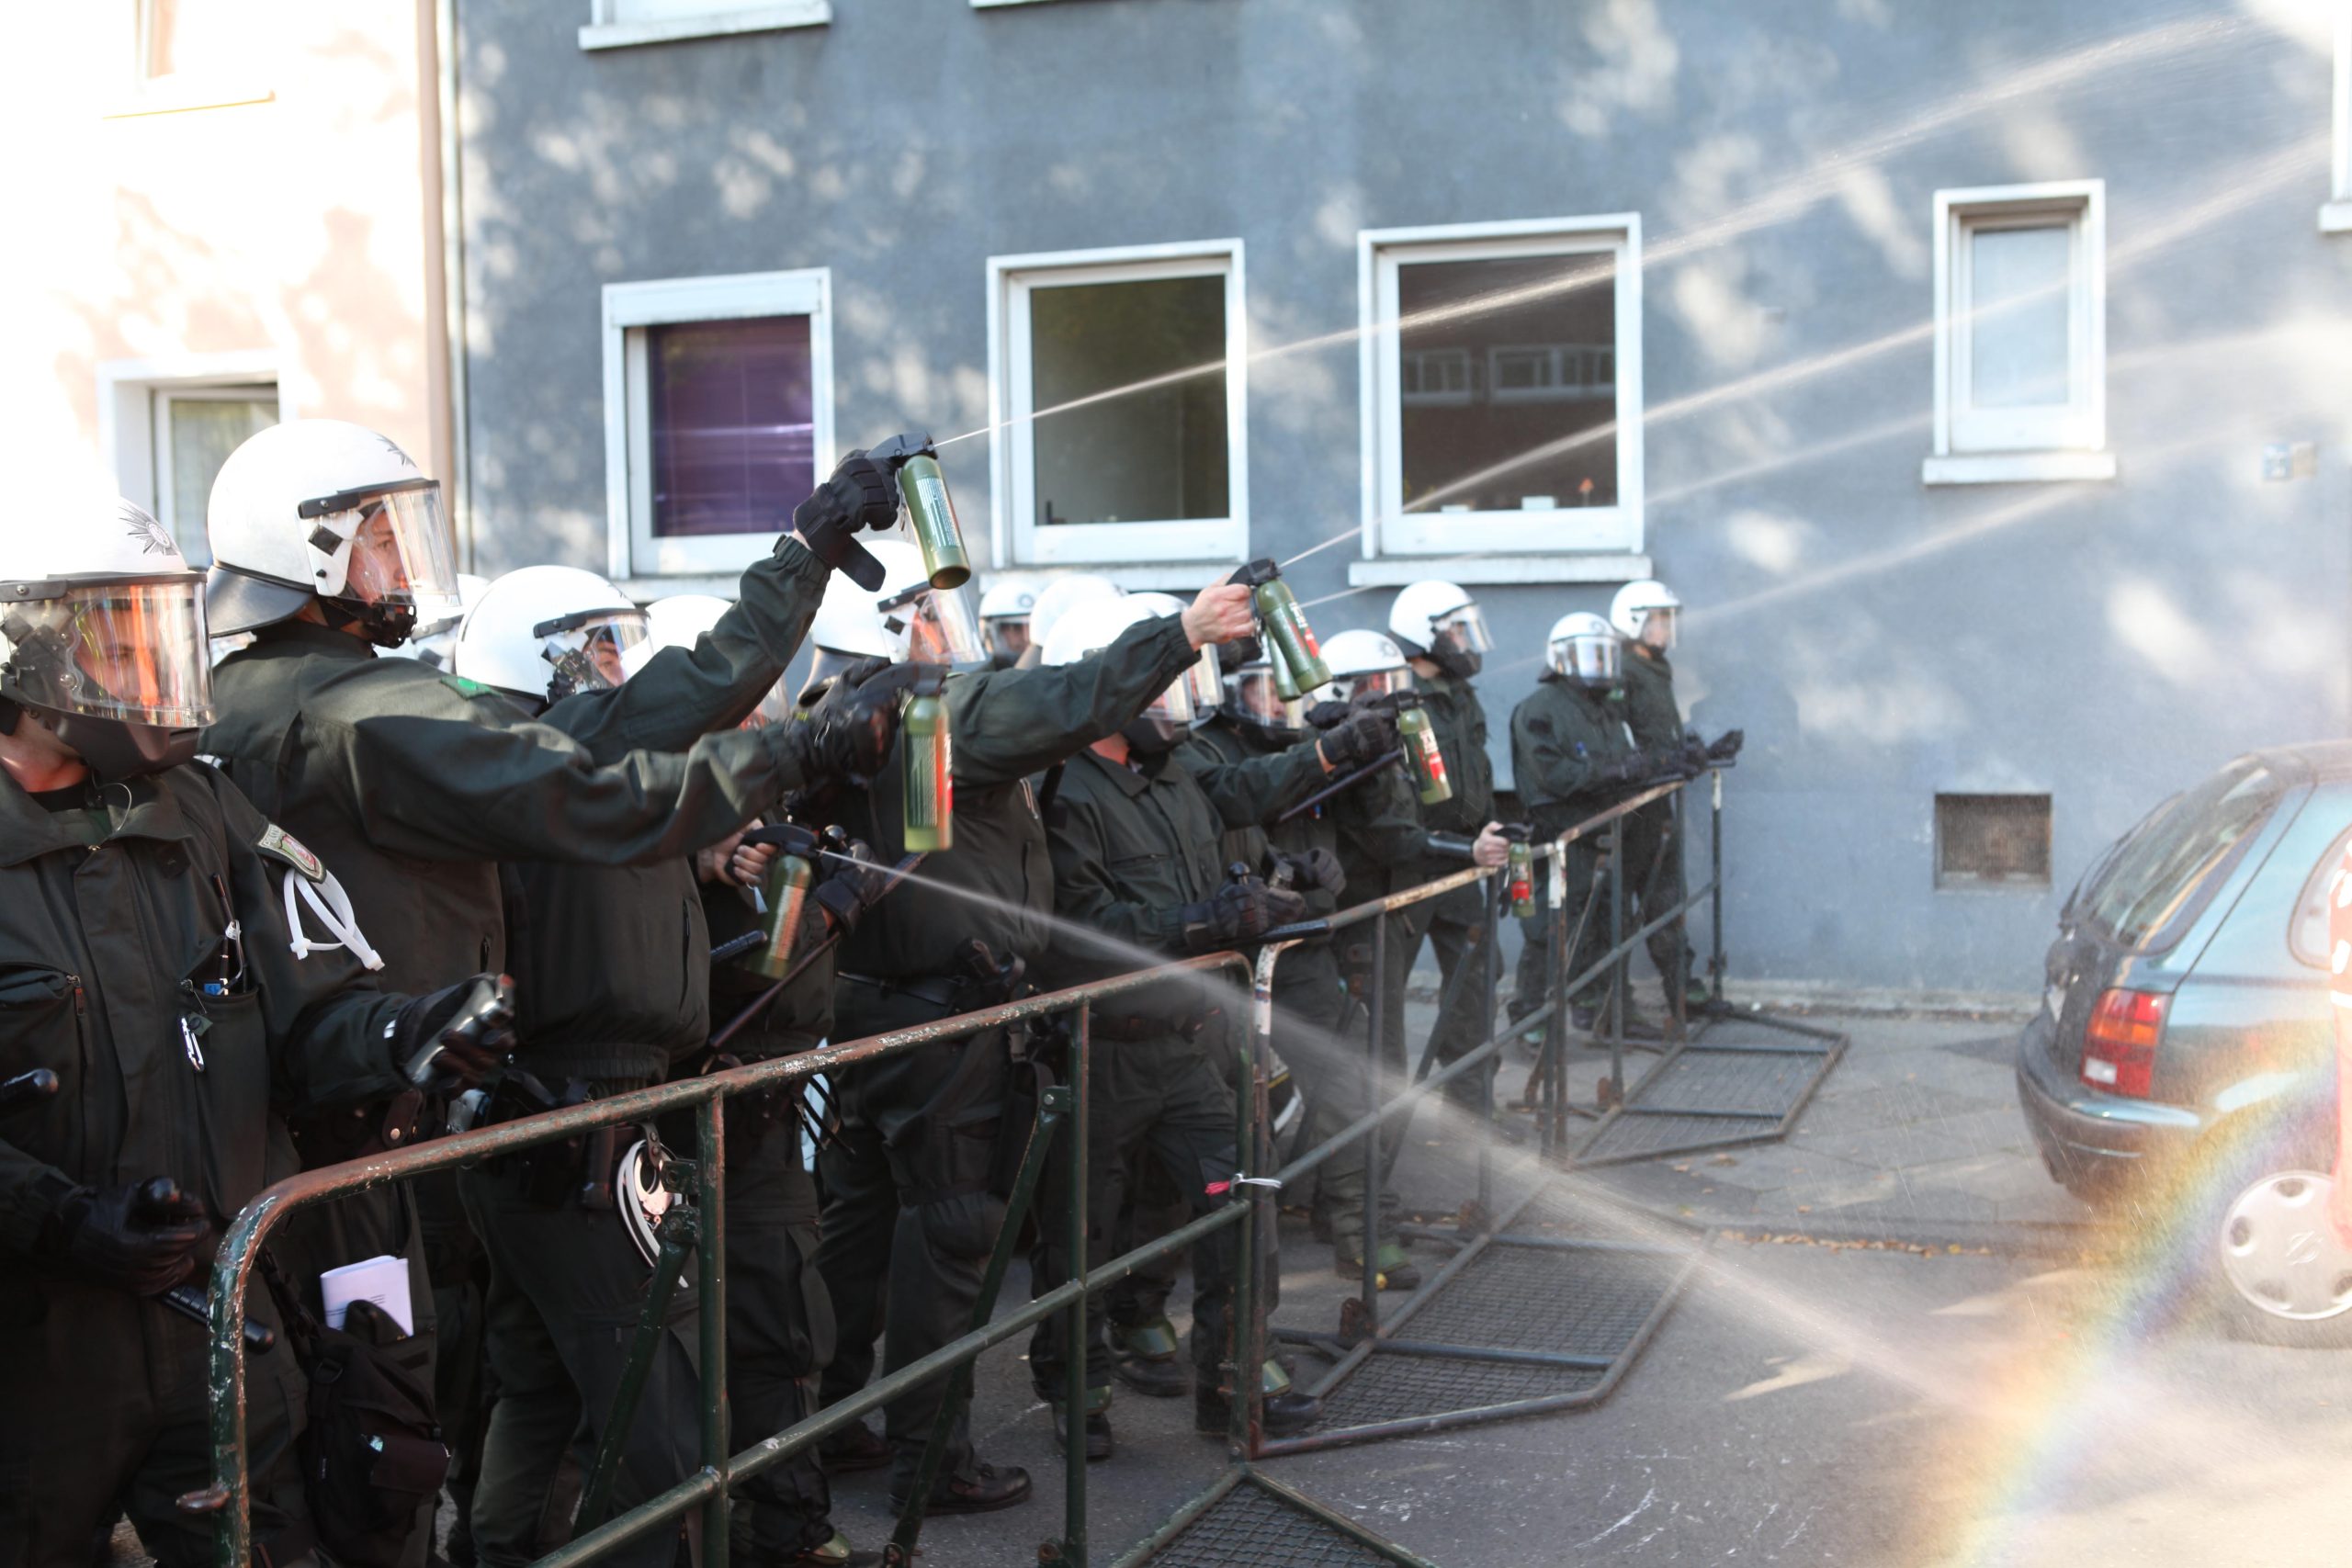 EZB-Proteste 2015 – Verfassungsbeschwerde gegen Polizeiwillkür